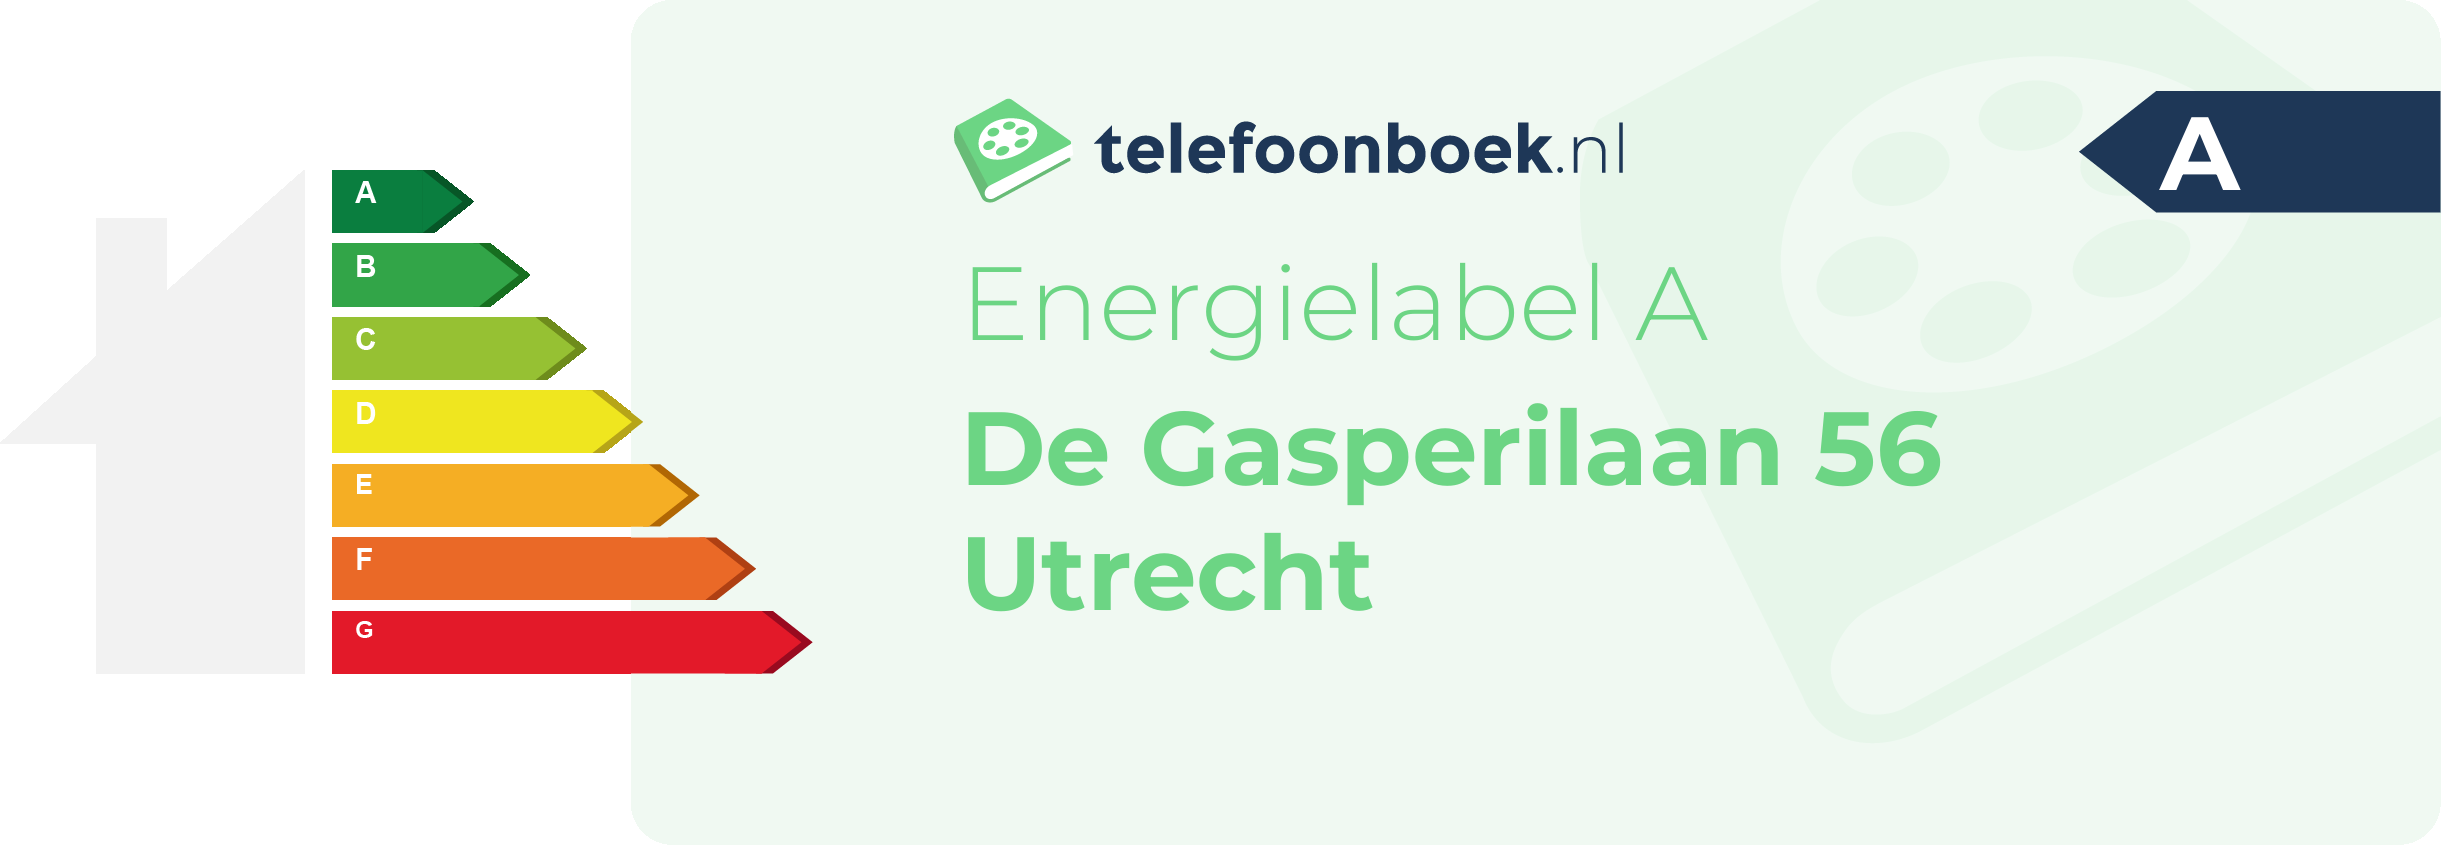 Energielabel De Gasperilaan 56 Utrecht